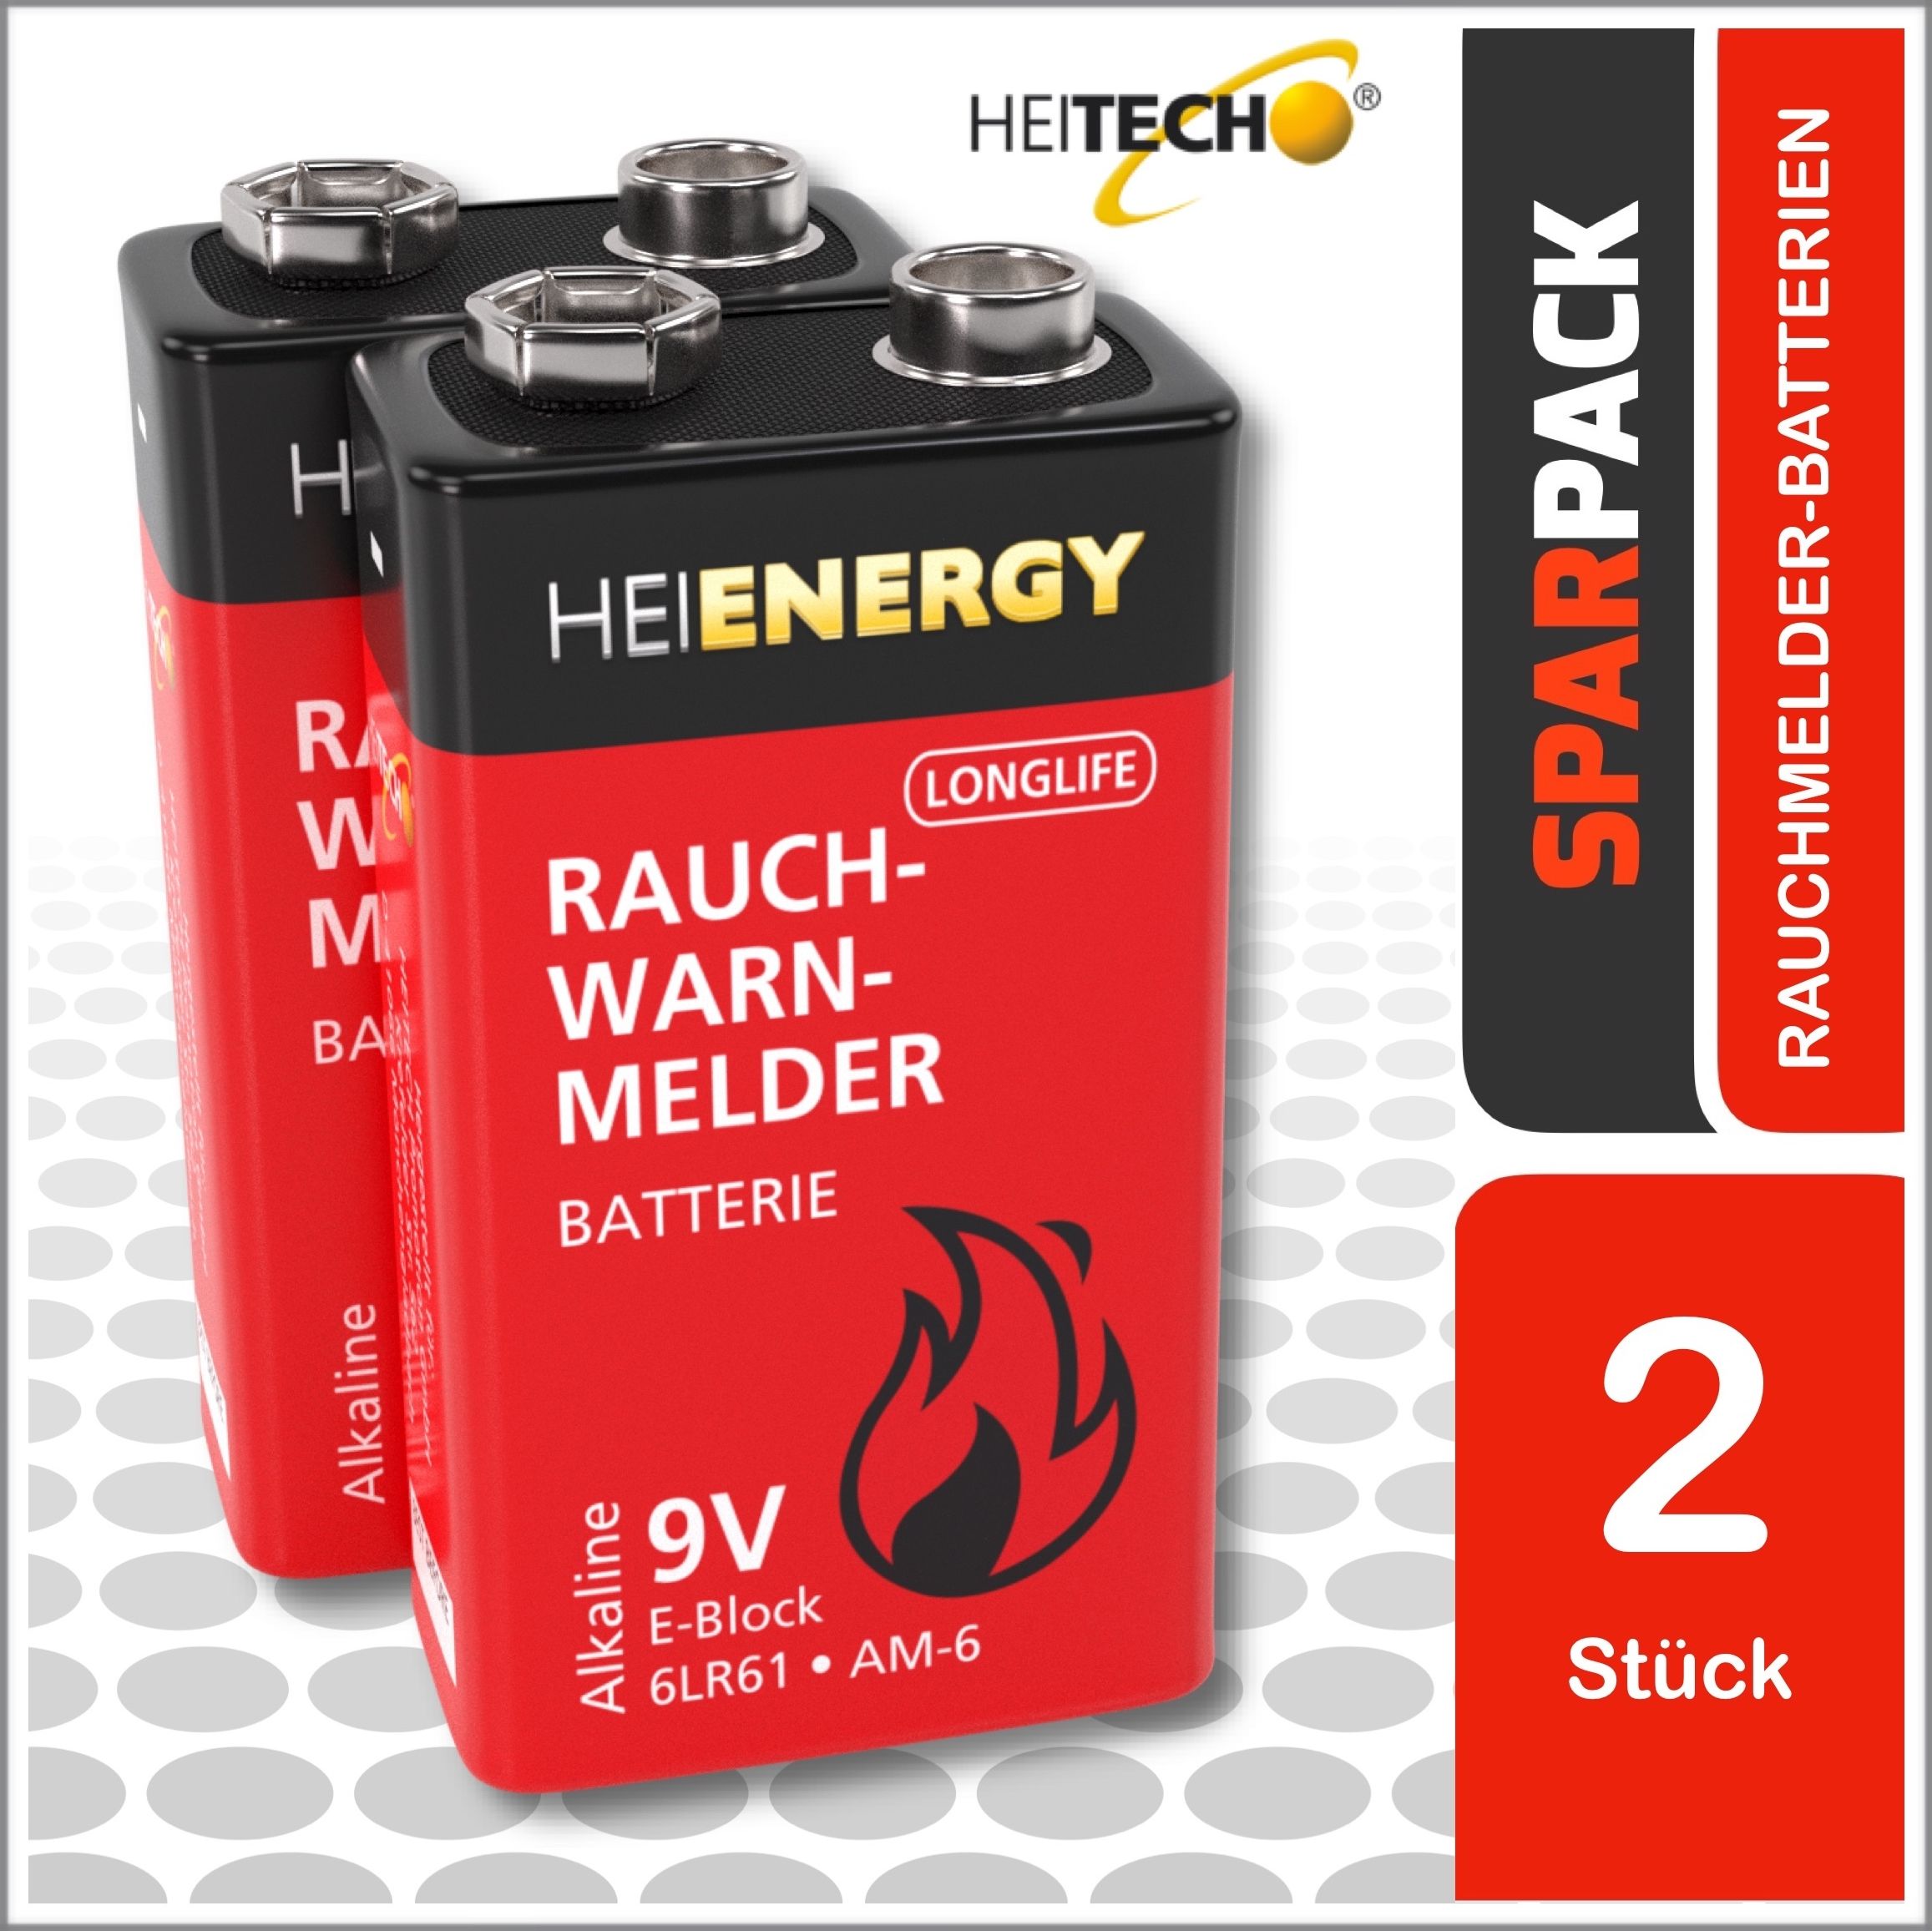 4x 2er Blister Batterien 9Volt E-Block !!! 8x Heitech Longlife Rauchmelder 